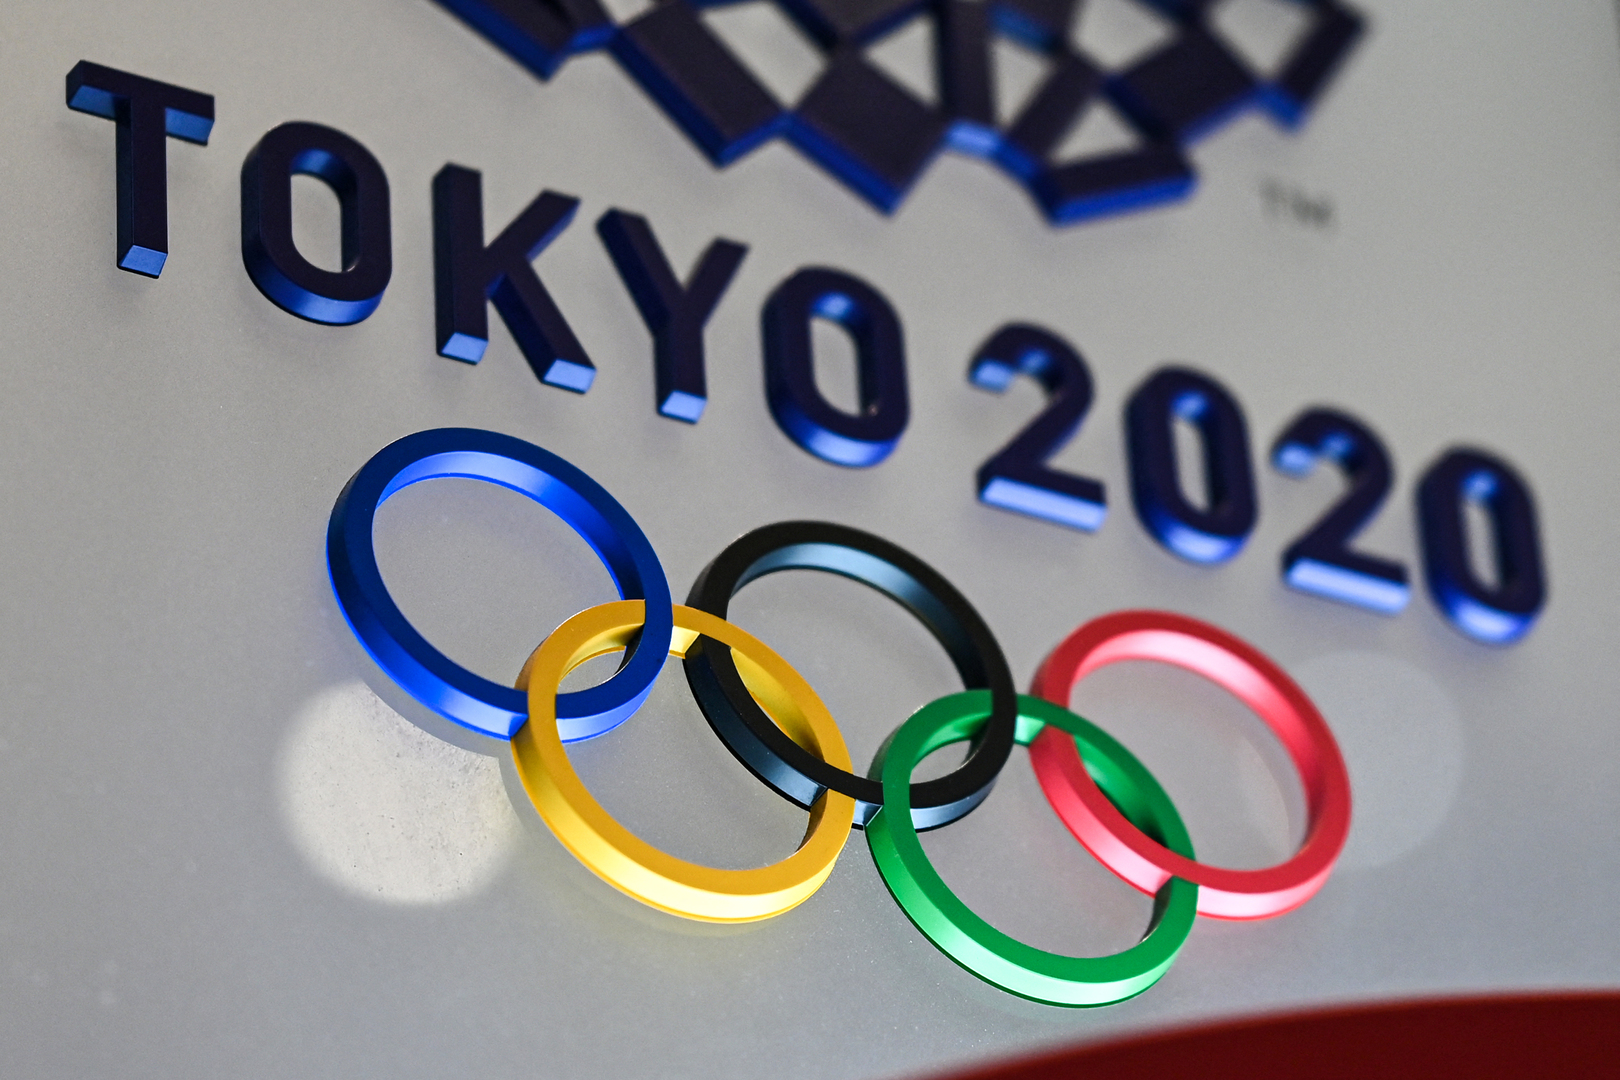 تخصيص 300 غرفة للرياضيين المصابين بكورونا في الأولمبياد